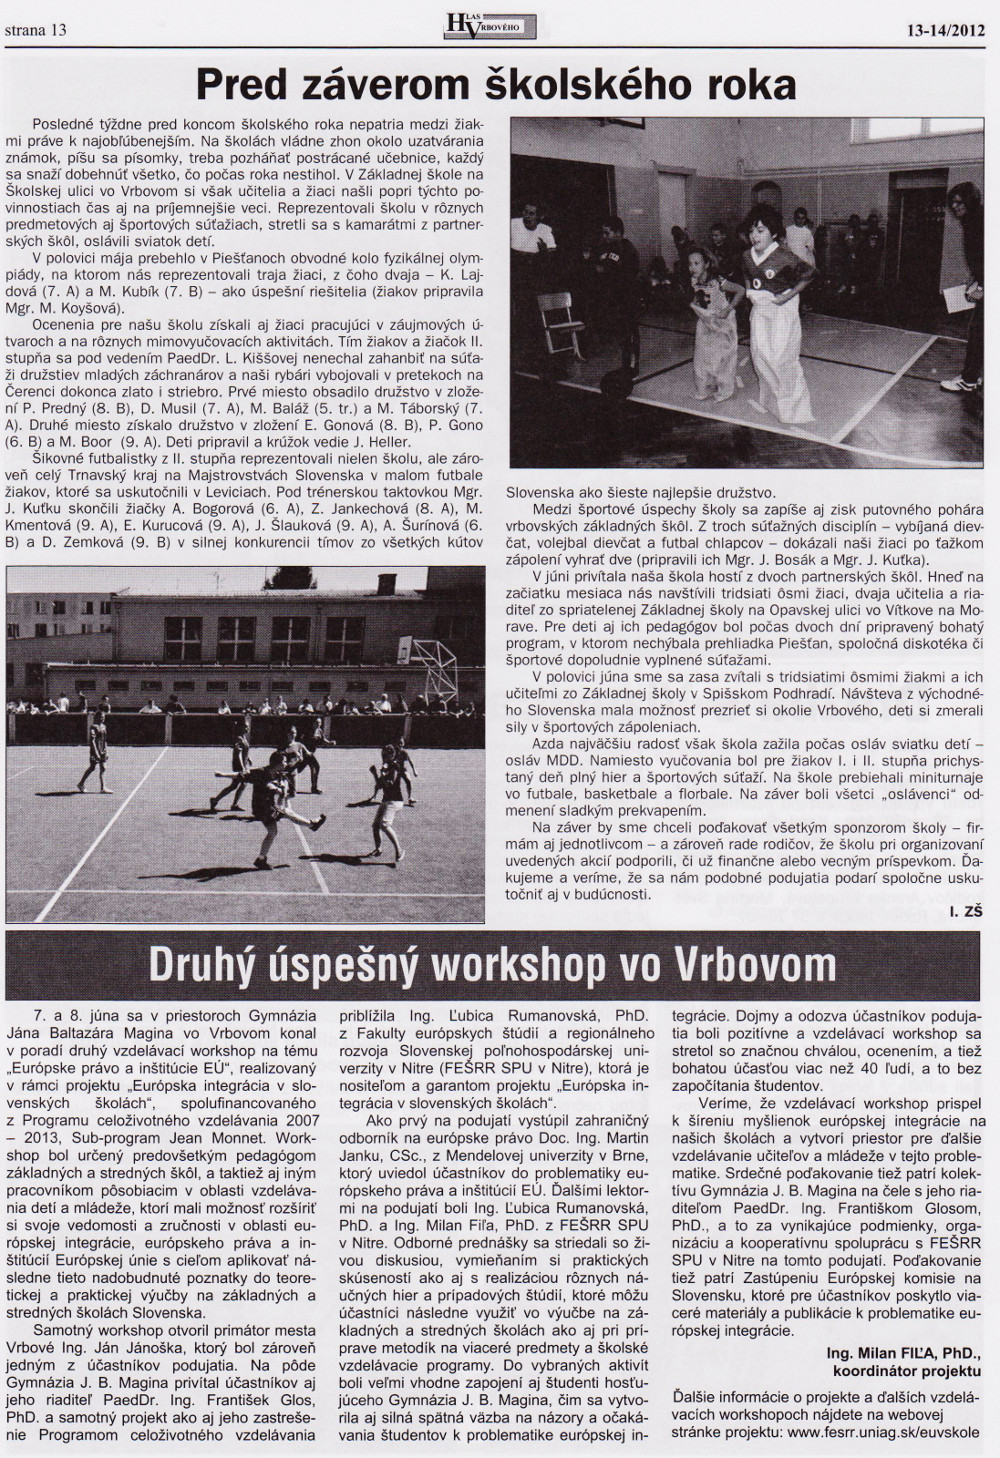 Hlas Vrbového 13-14/2012, strana 13